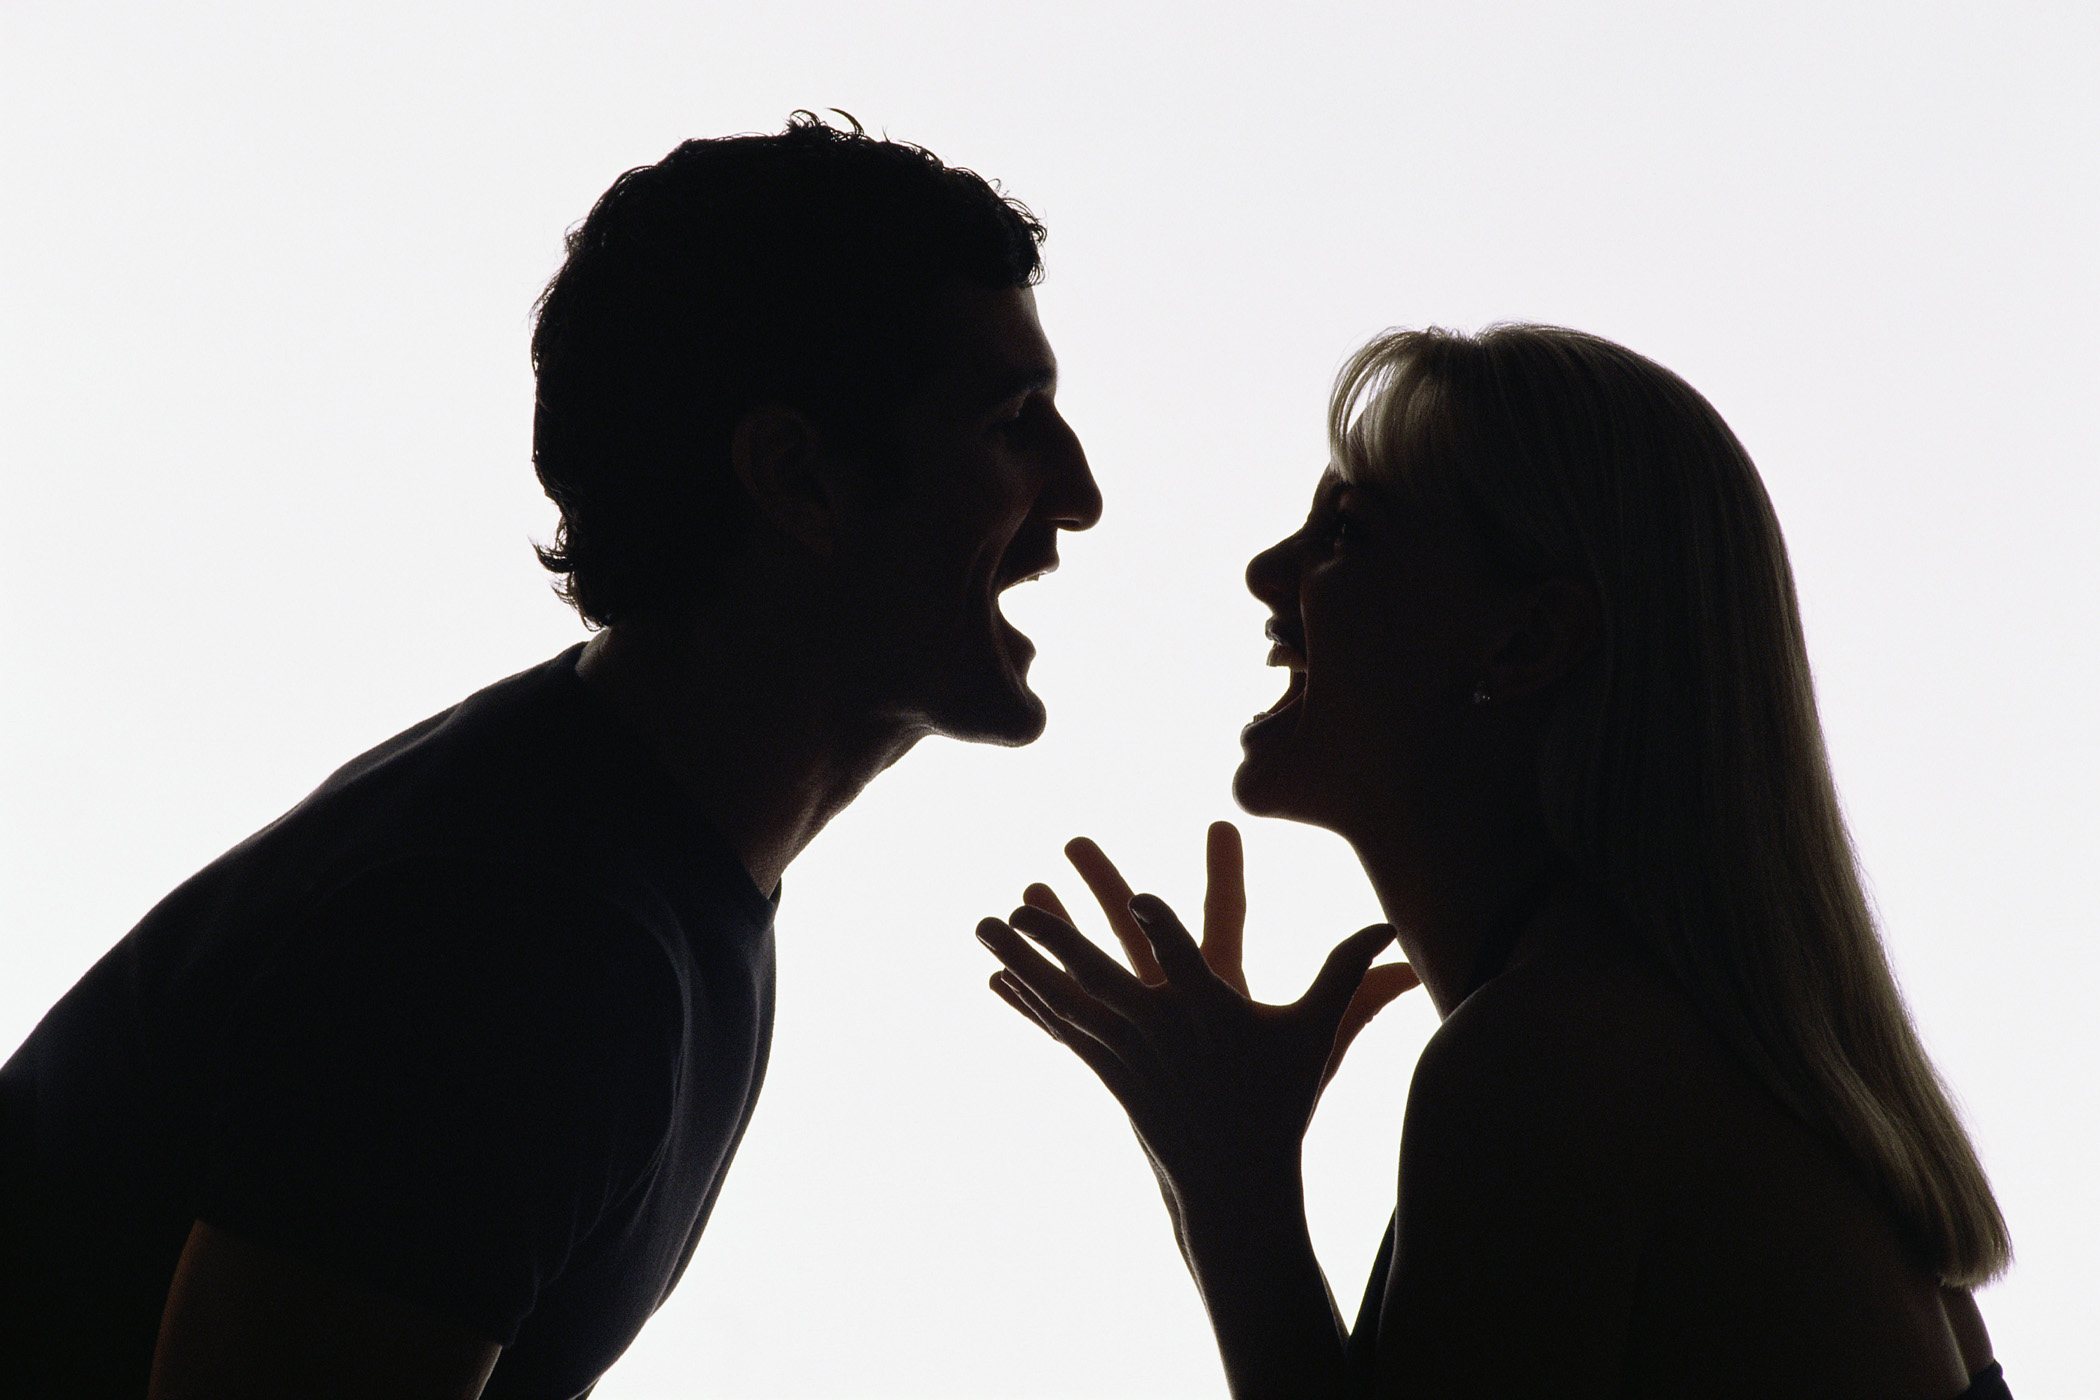 Relacionamento abusivo: precisamos falar sobre isso!